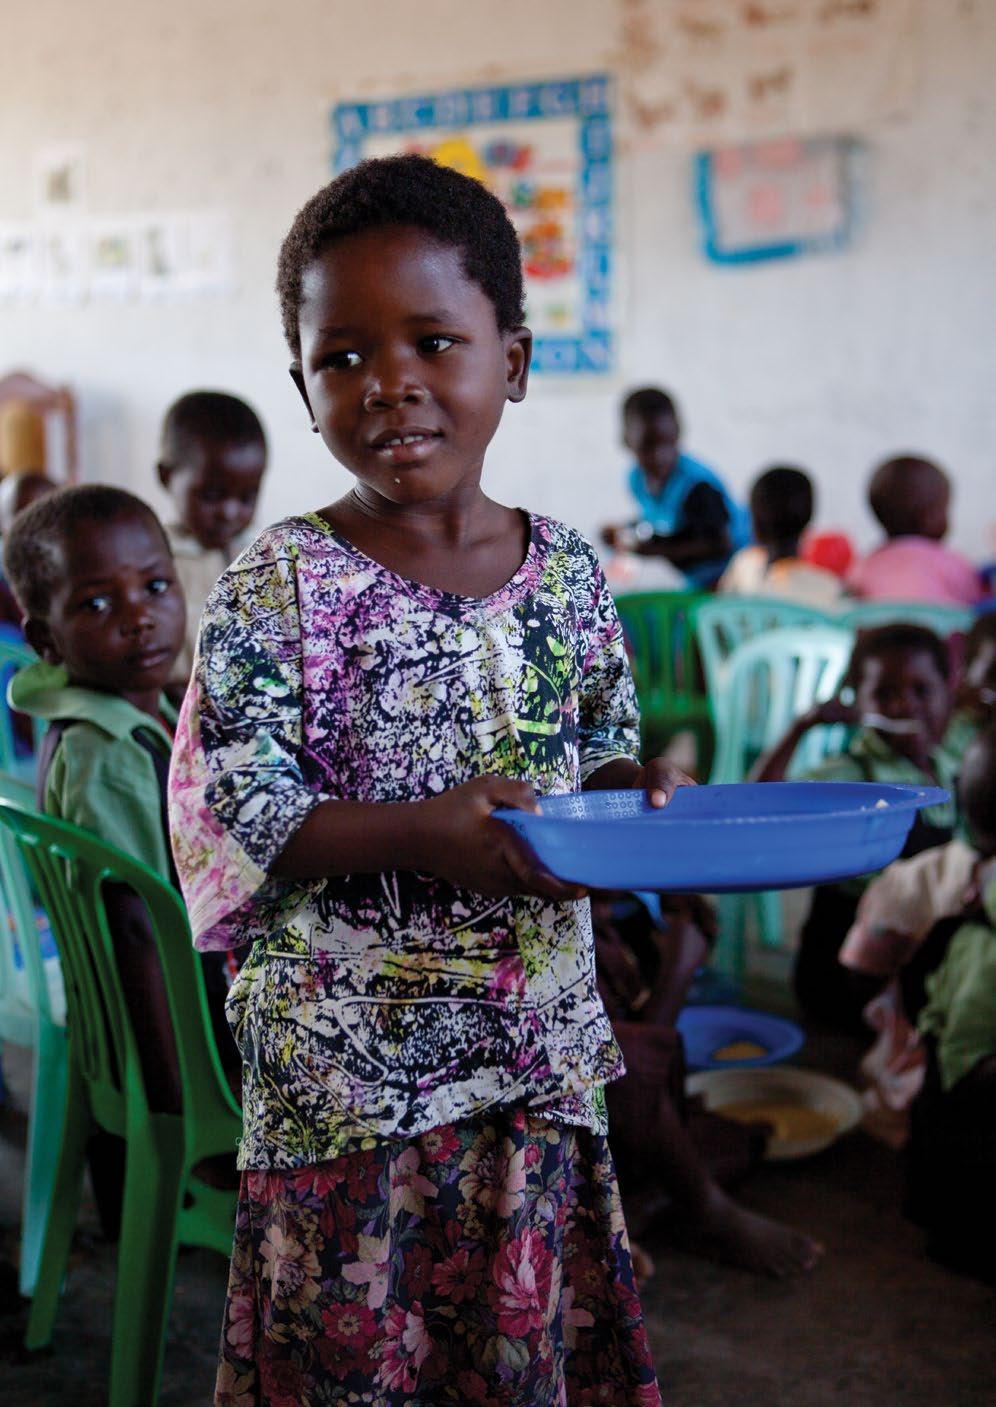 VitaMeal-posene, går direkte til å forbedre helse, utdannelse og økonomiske muligheter for barn.